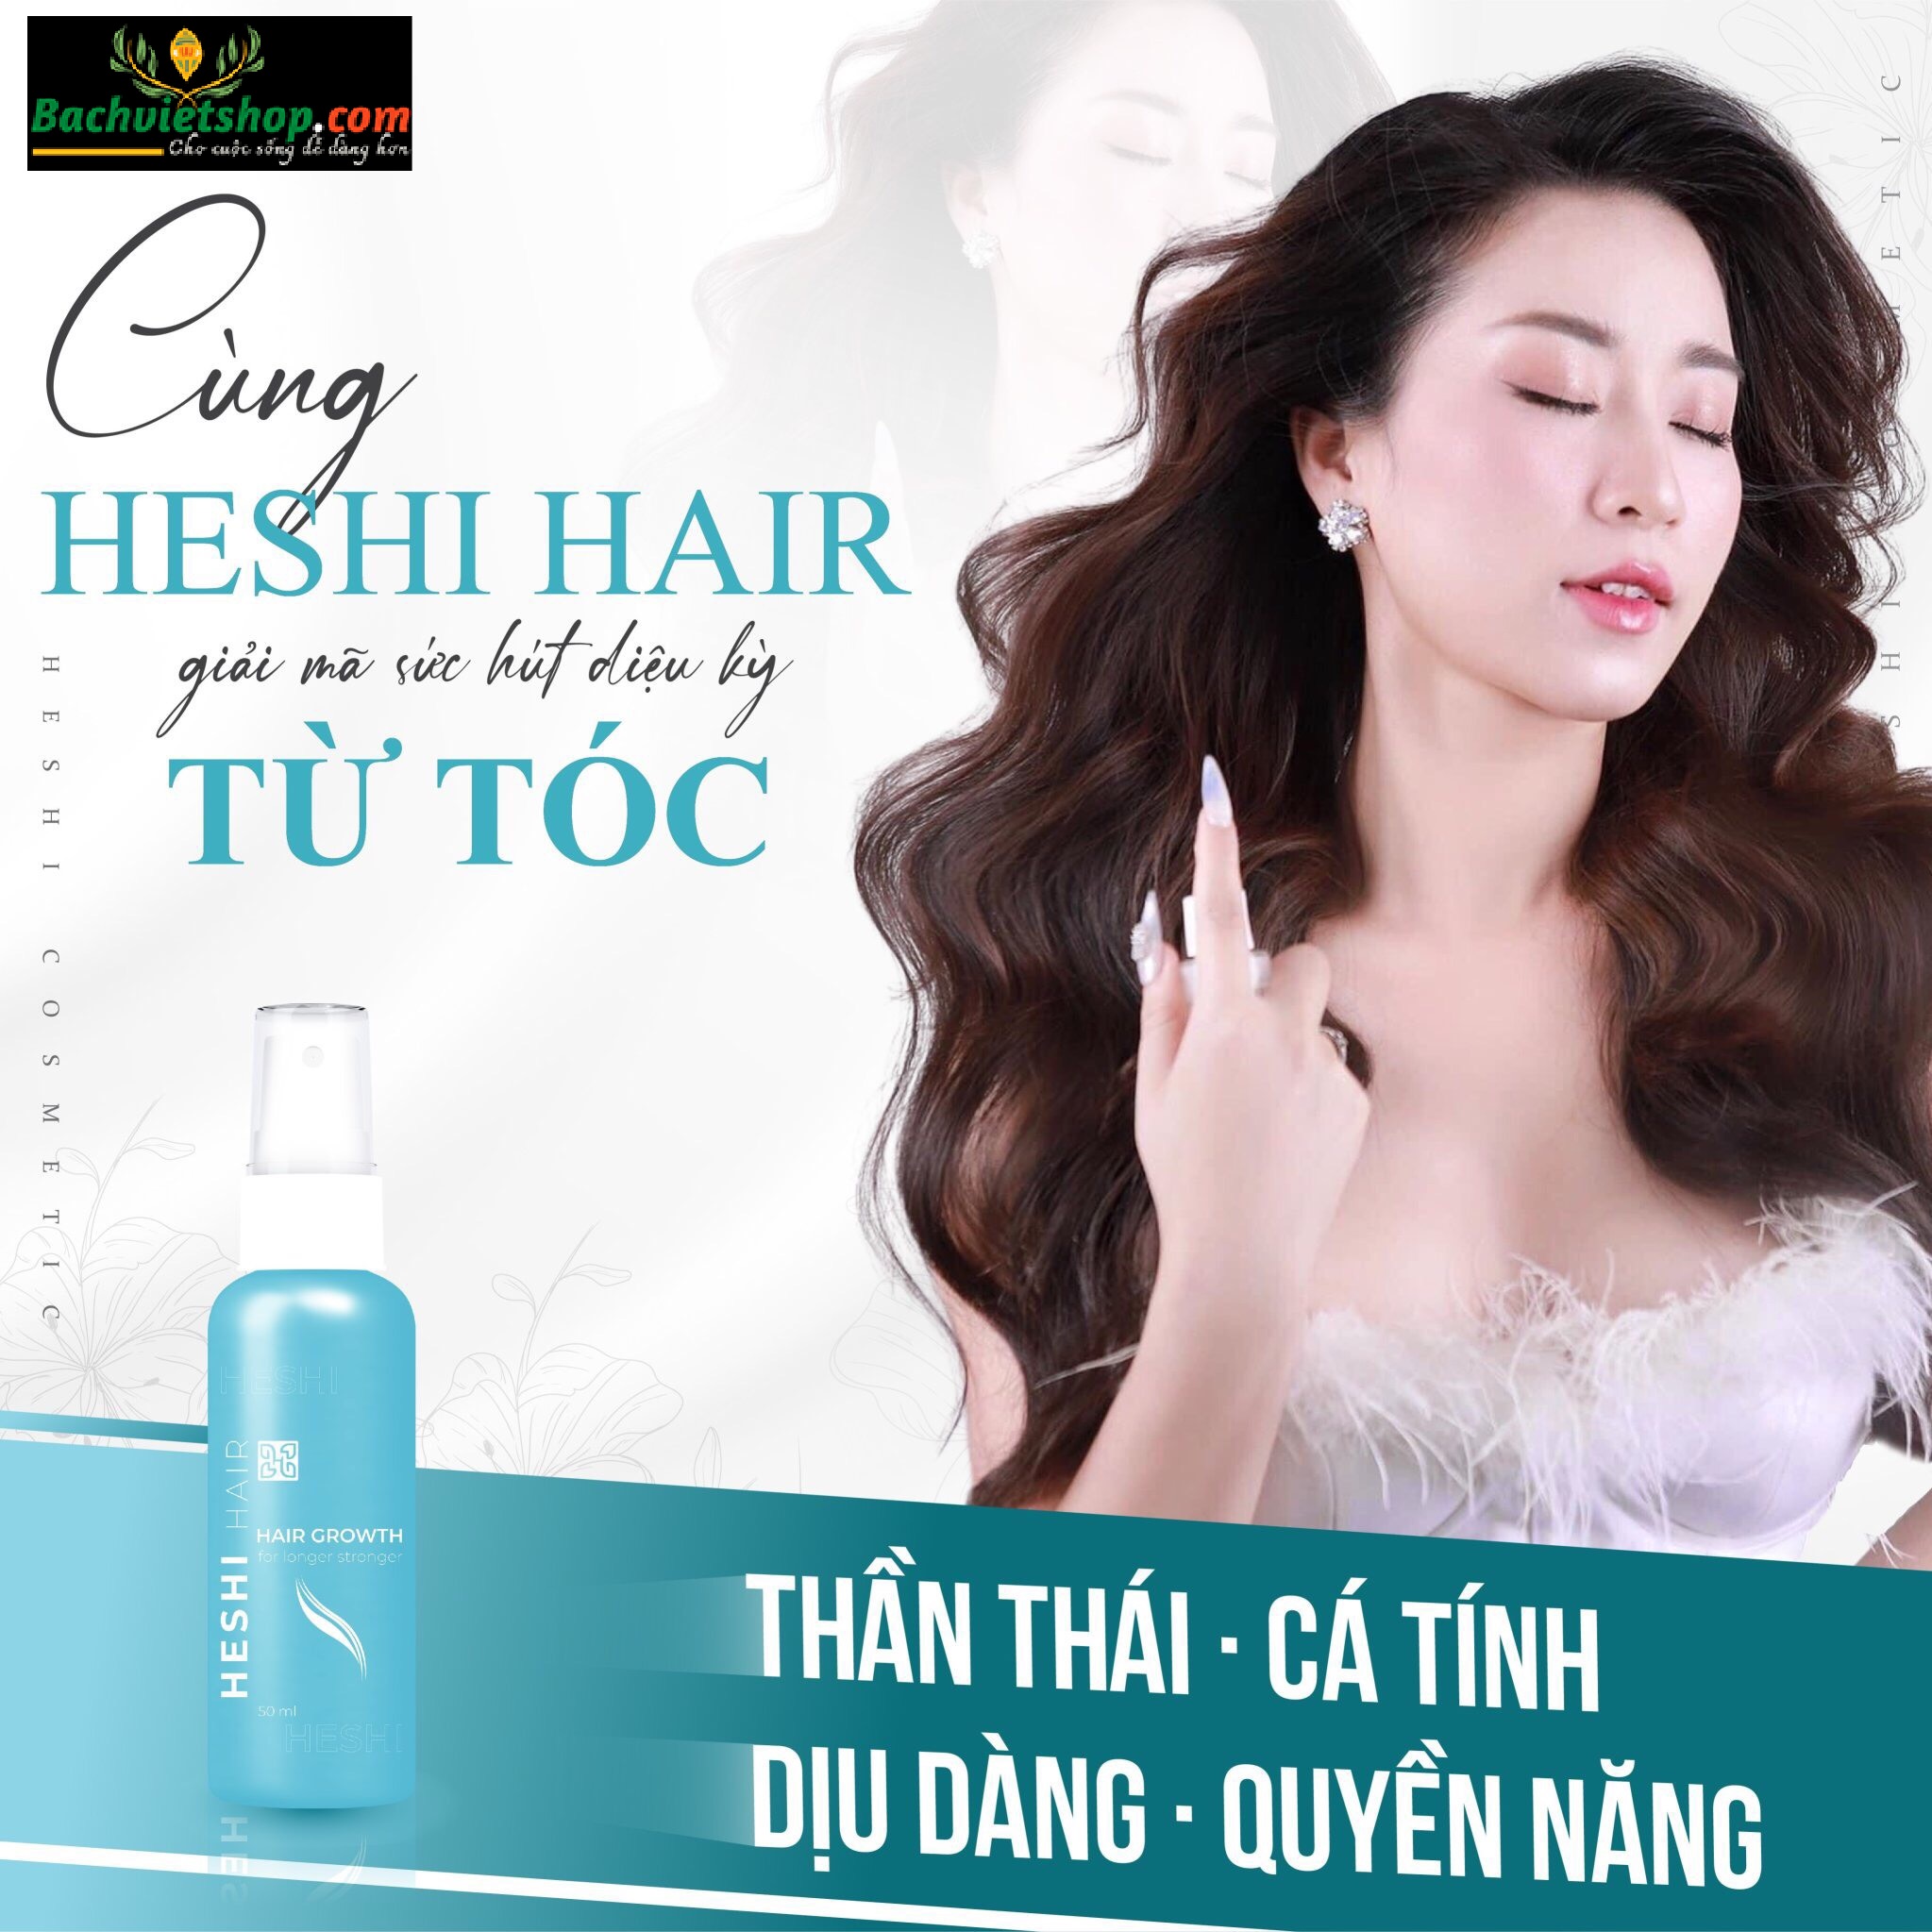 Xịt dưỡng tóc Heshi Hair Growth - tự hào khi được chăm sóc cho hàng nghìn mái tóc hư tổn.